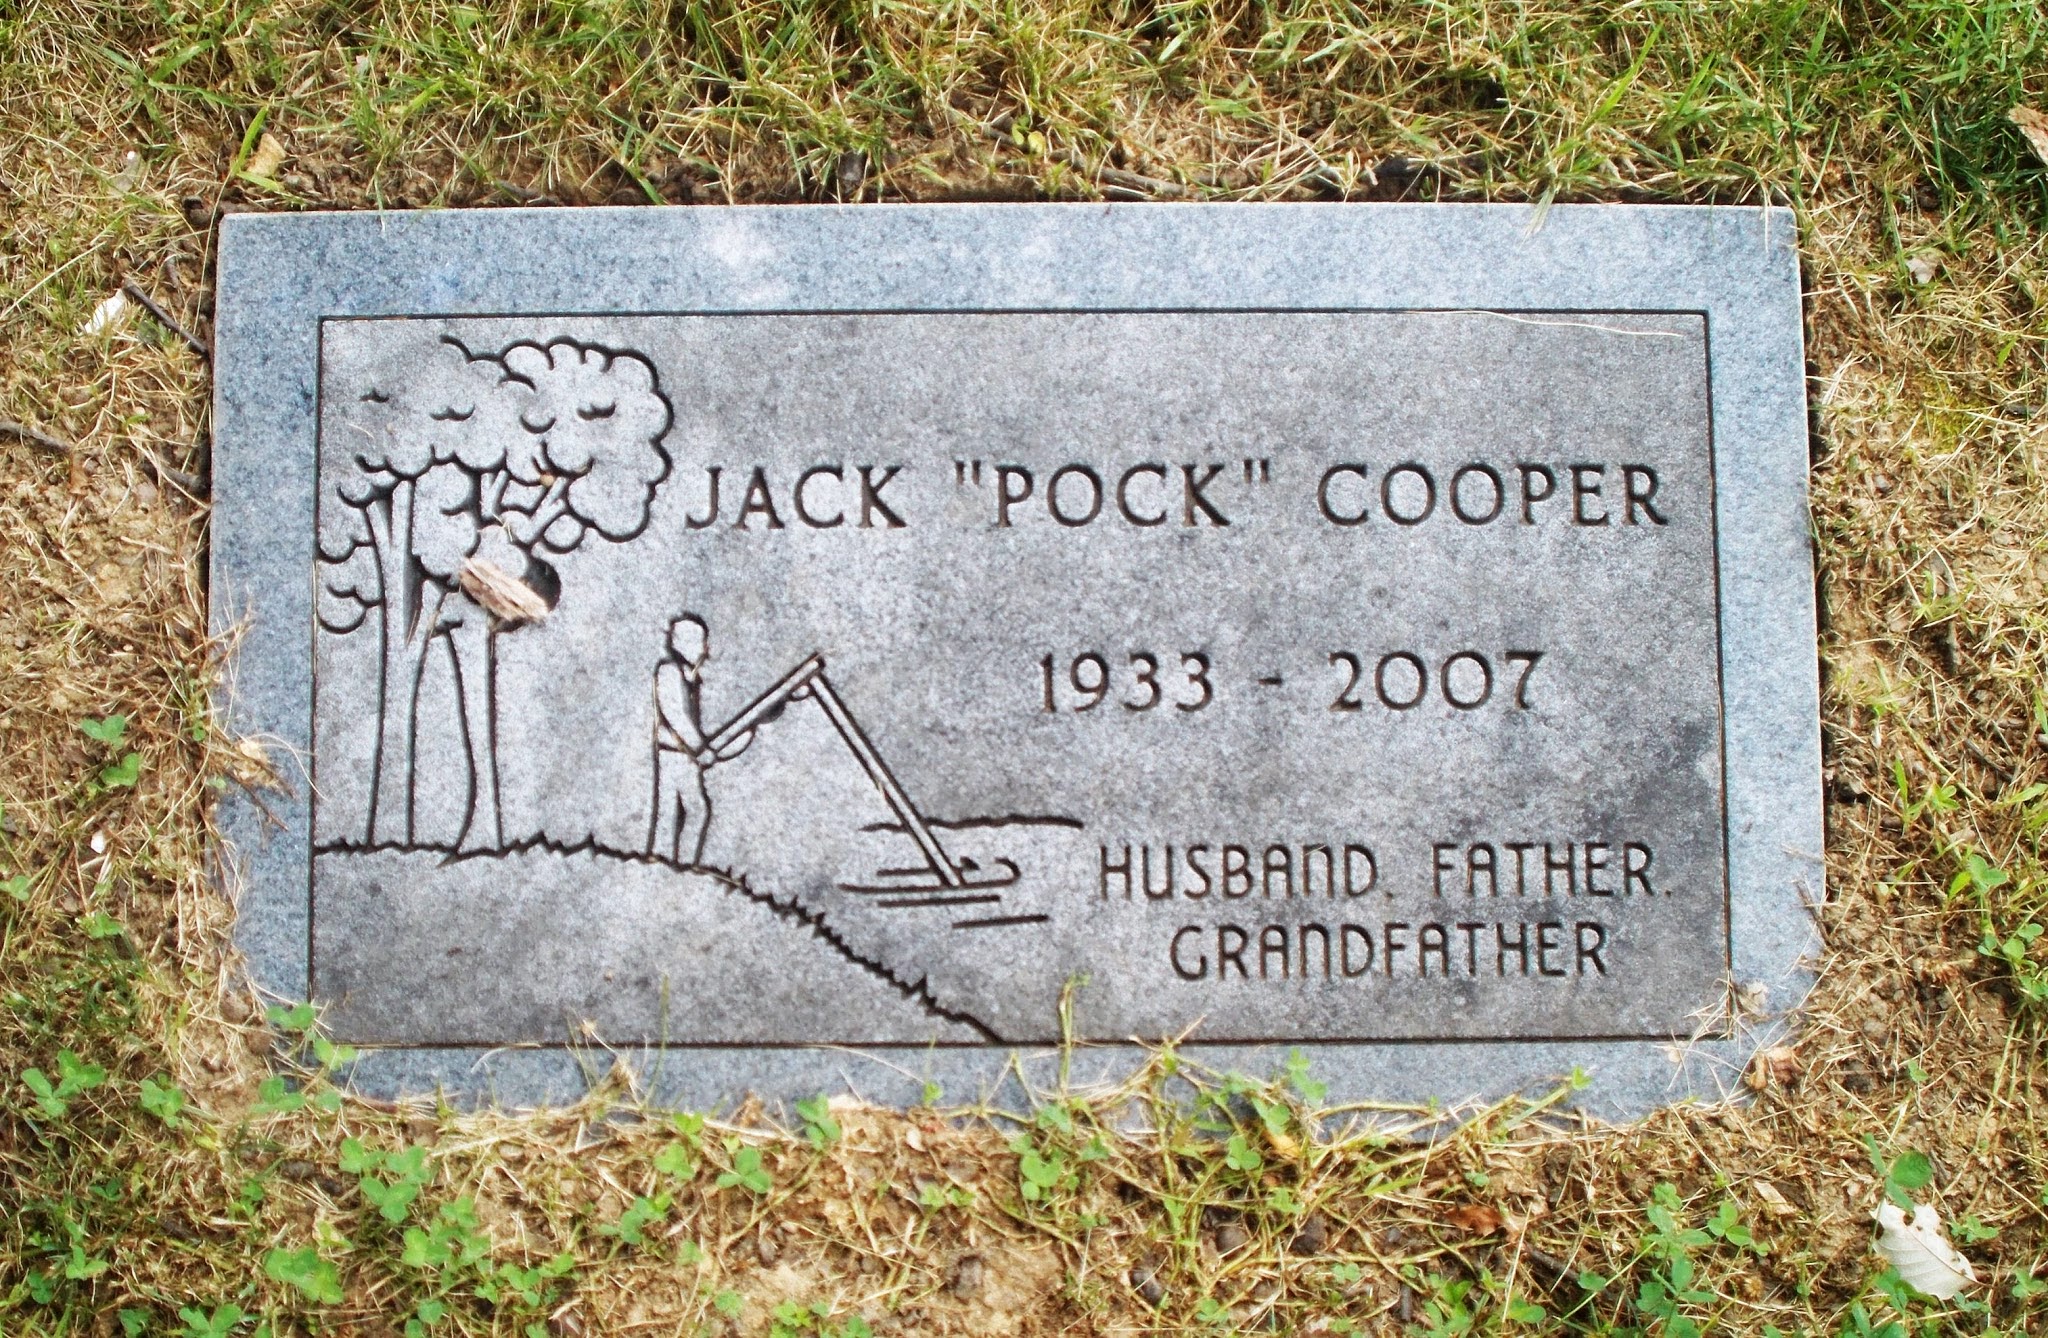 Jack "Pock" Cooper